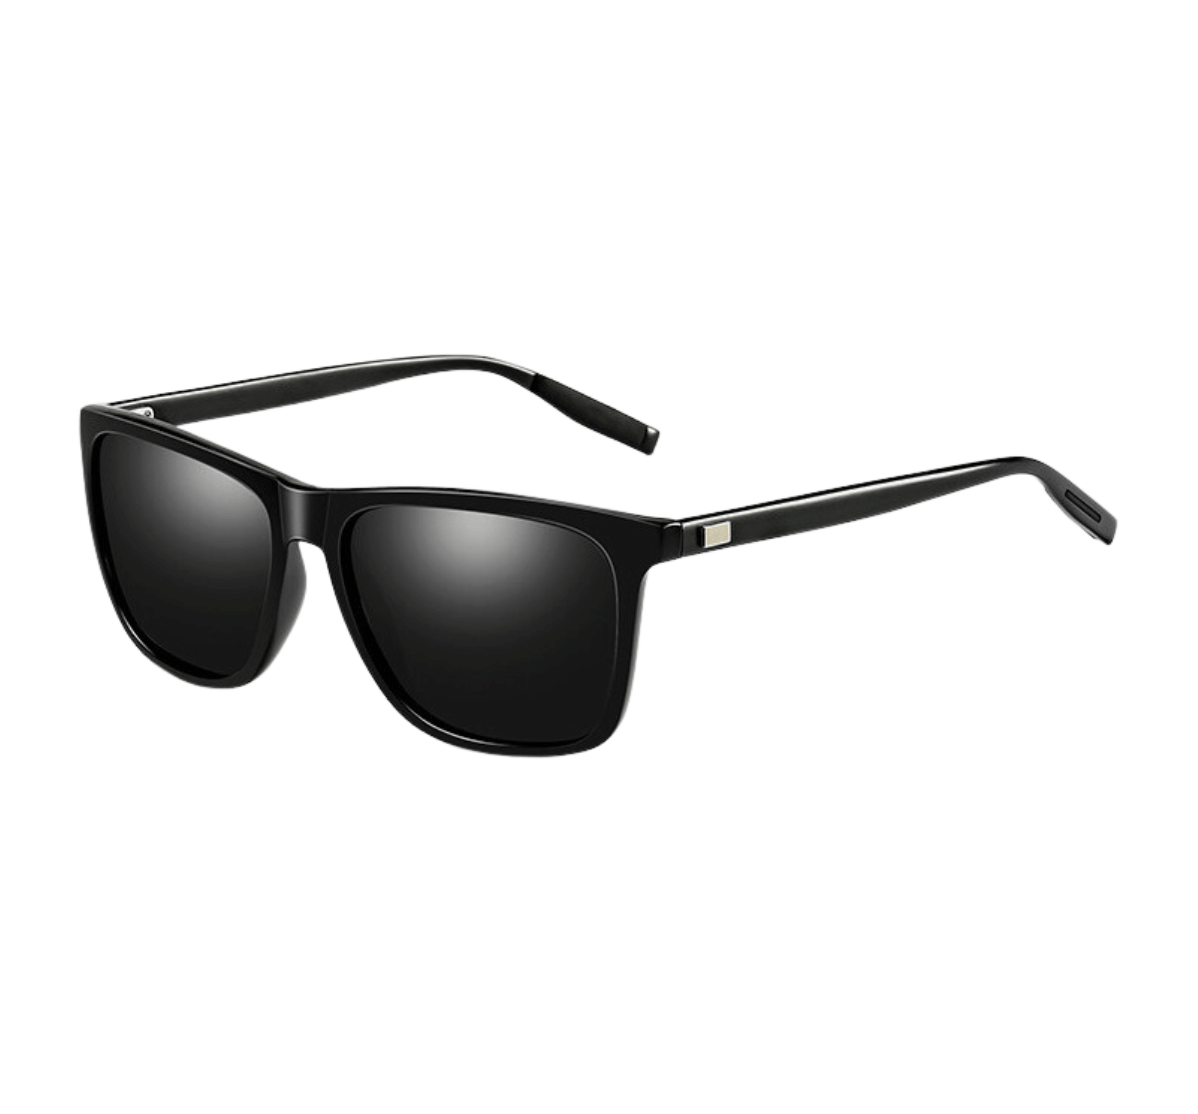 custom plastic vintage sunglasses, cheap custom plastic sunglasses, bulk order plastic sunglasses, customized sunglasses in bulk, custom sunglasses china, Sunglasses Manufacturer, sunglasses supplier